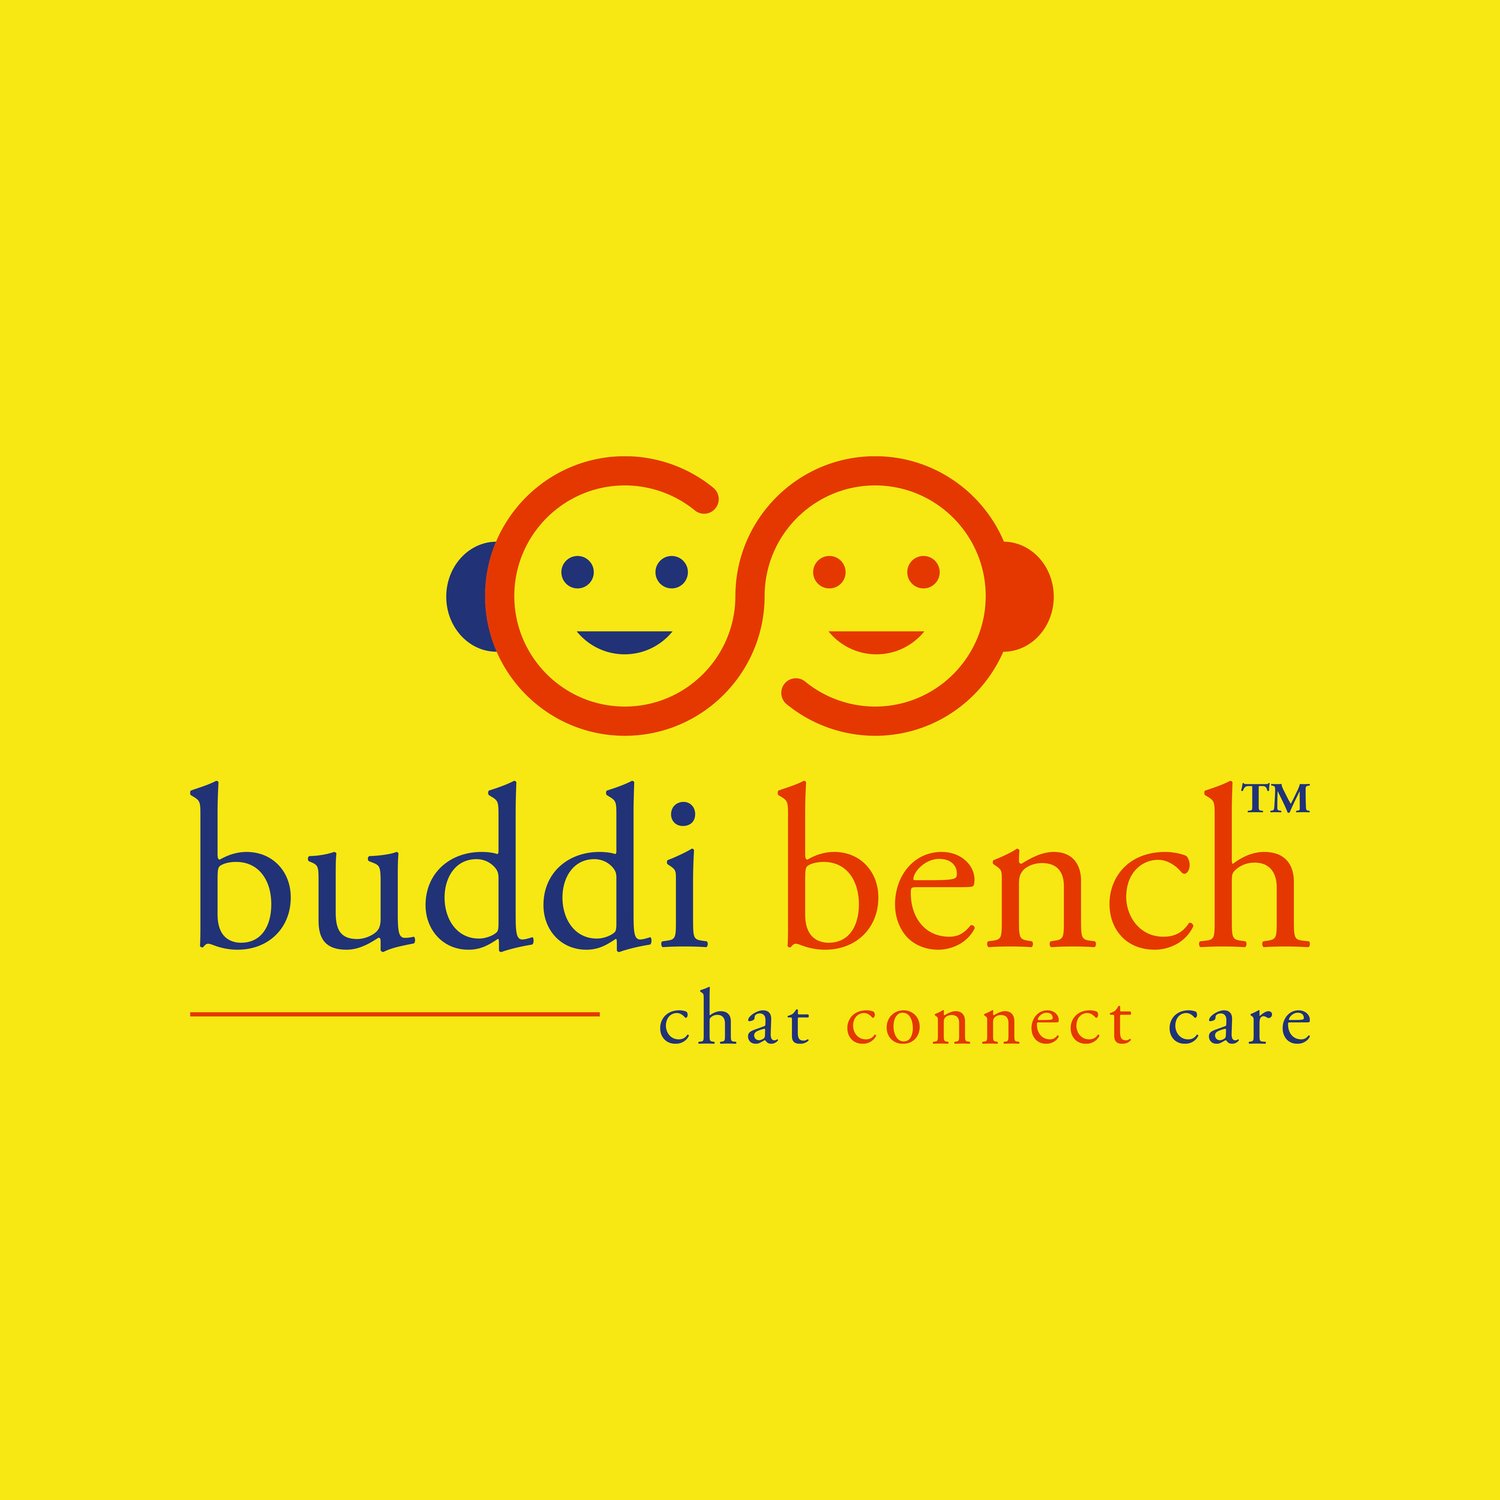 buddi bench